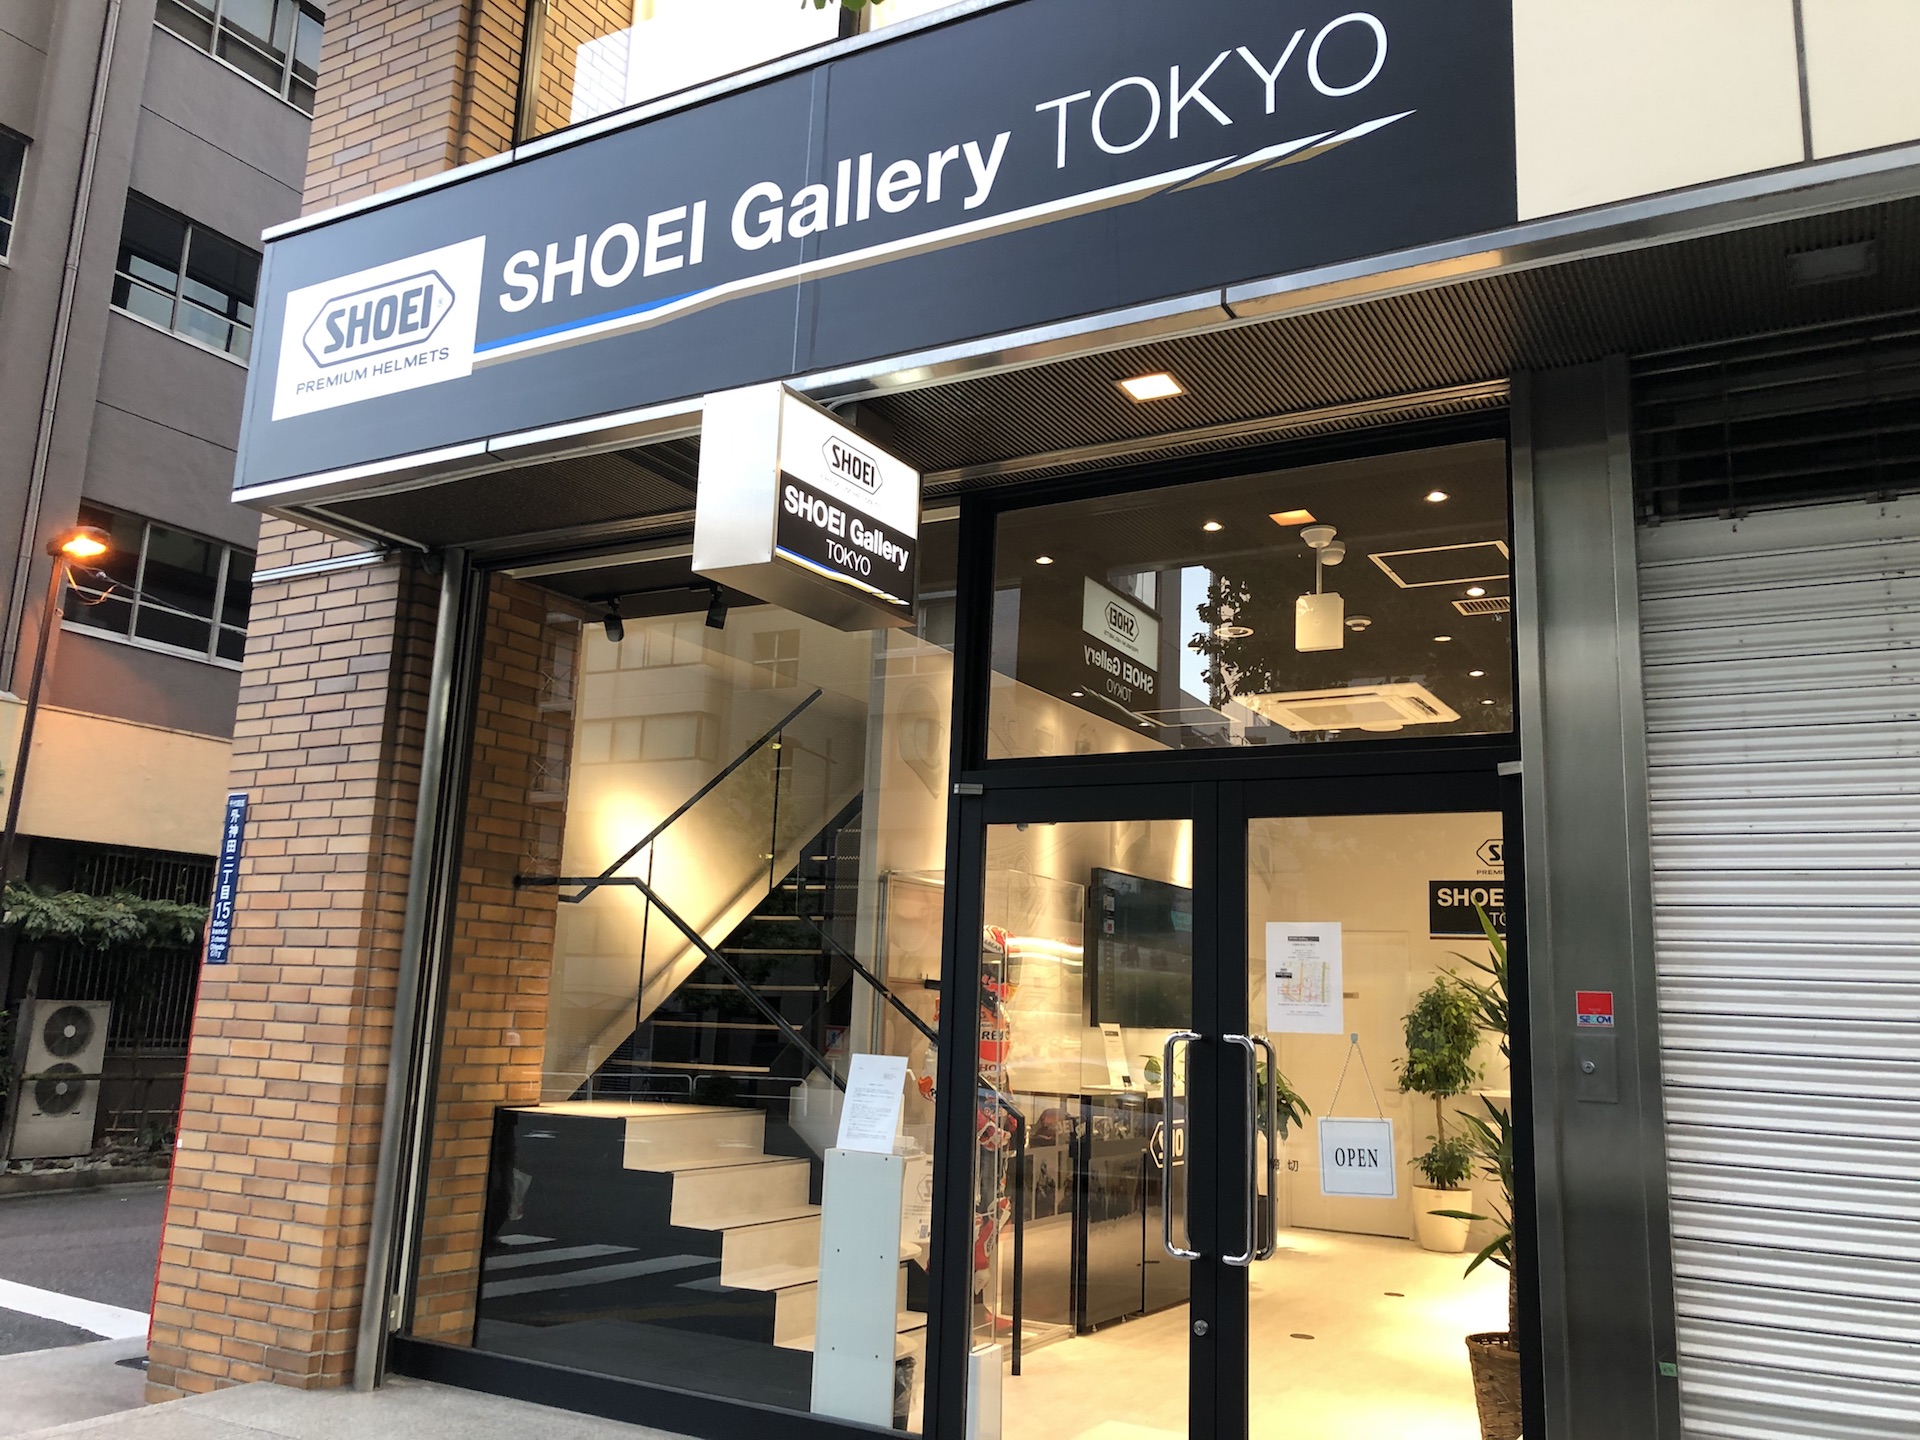 【原付二種】神田にあるSHOEI Gallery TOKYOへ行ってきた